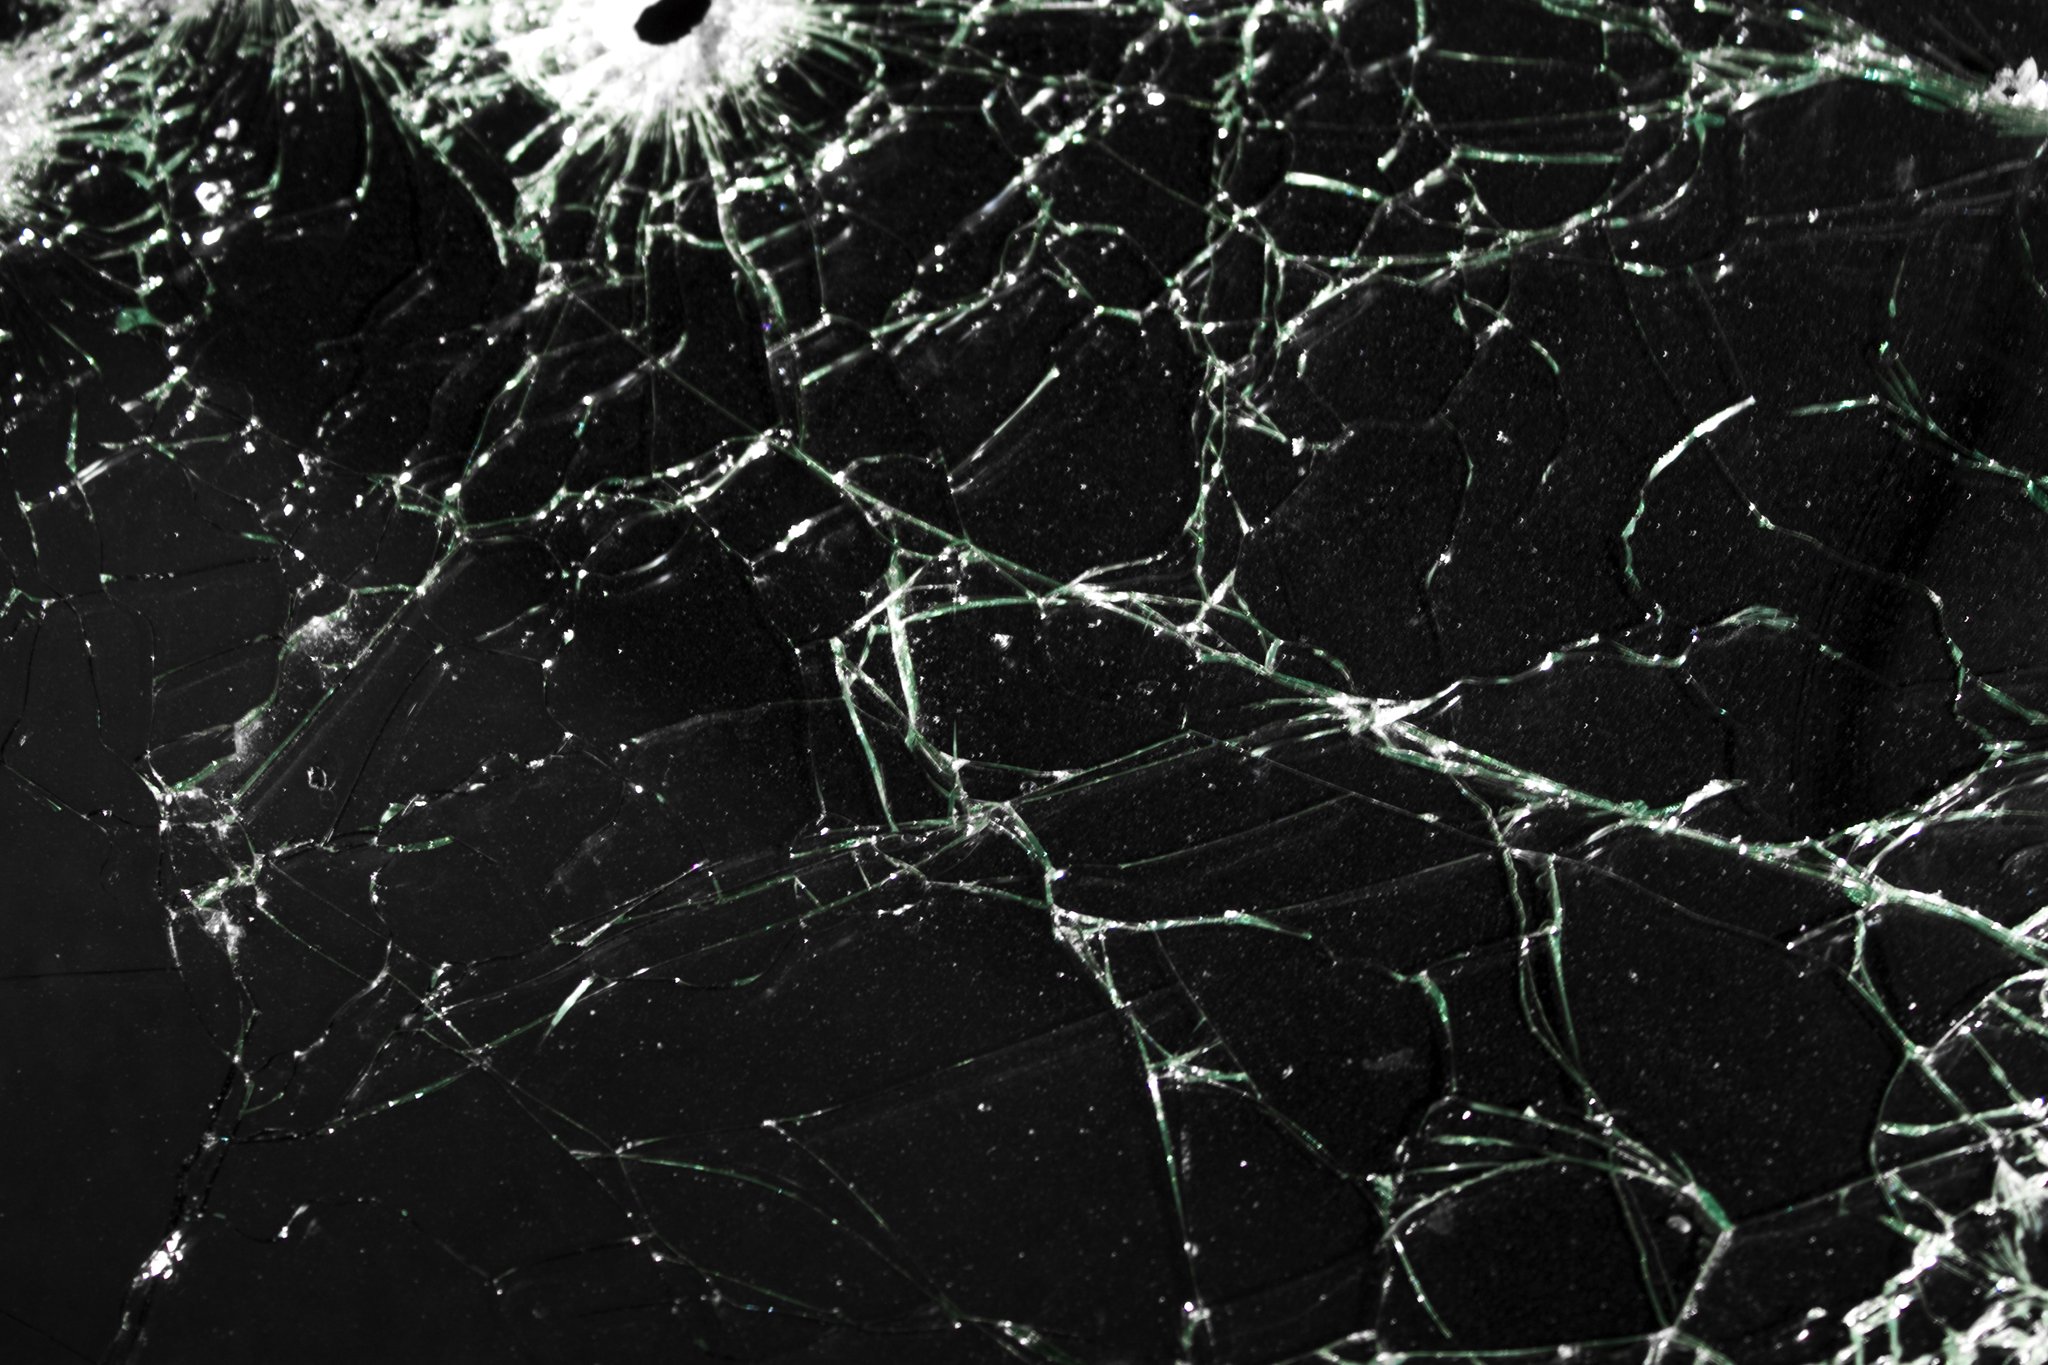  textures glass crack broken glass wallpapers textures   download 2048x1365